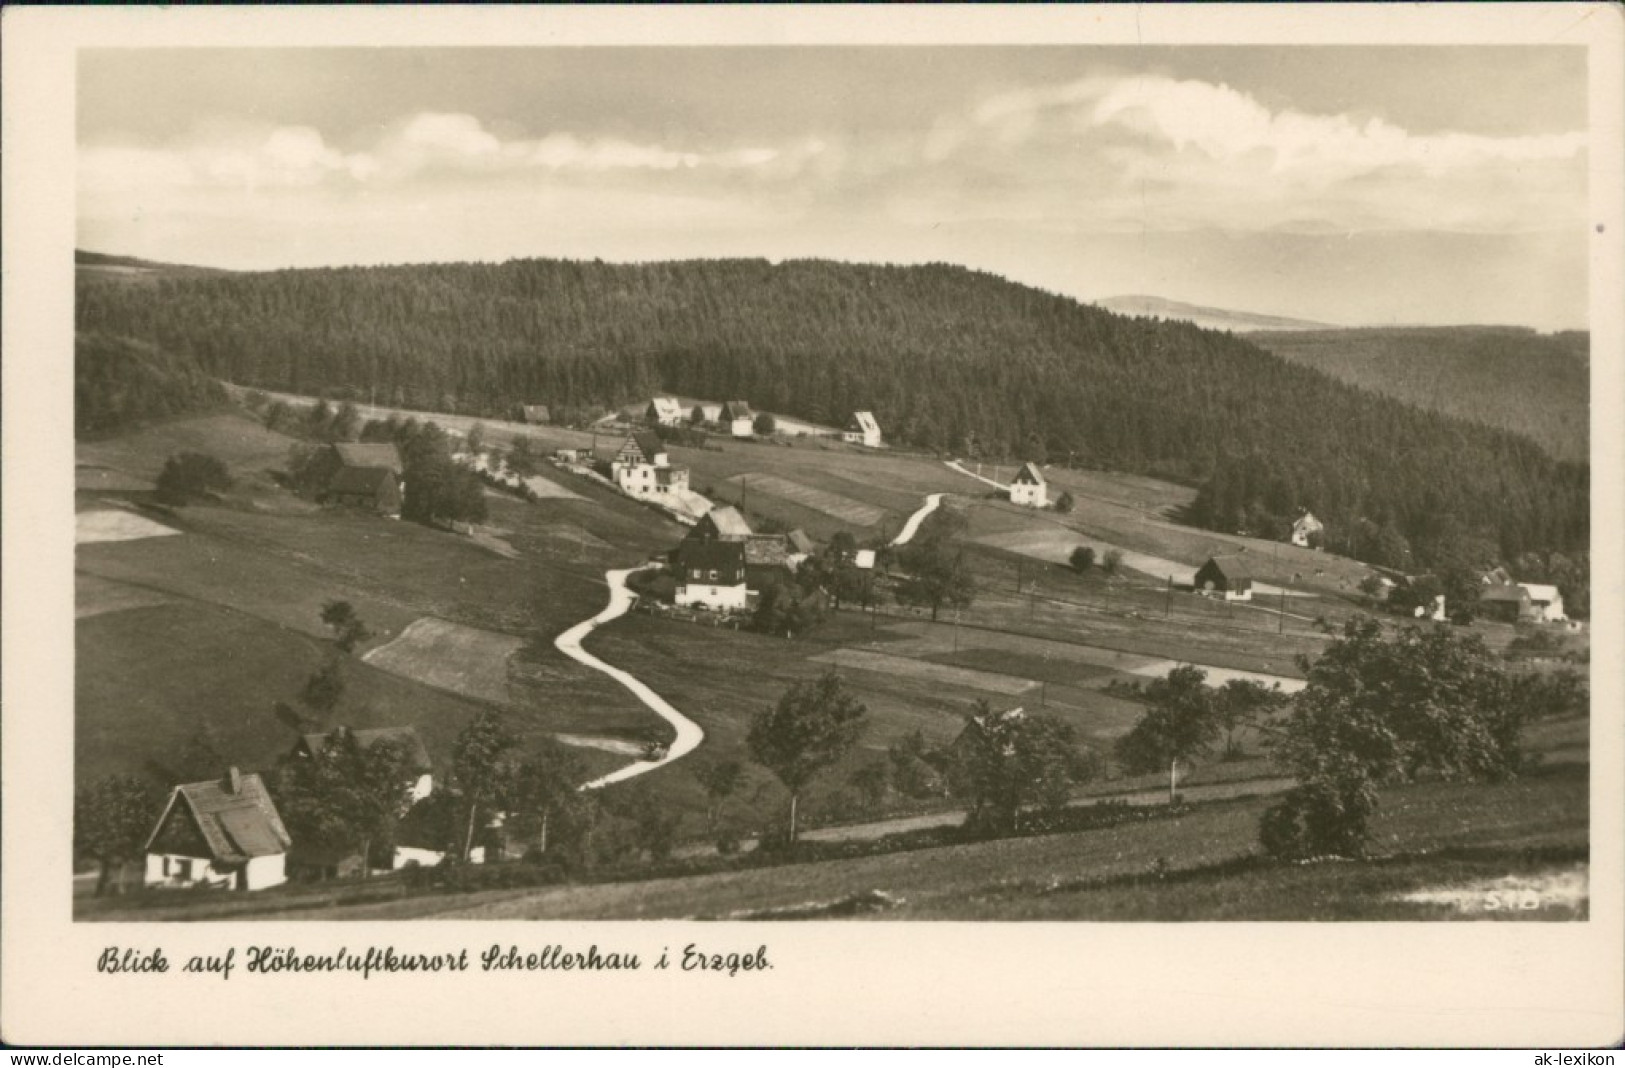 Ansichtskarte Schellerhau-Altenberg (Erzgebirge) Blick Auf Den Ort 1952 - Schellerhau